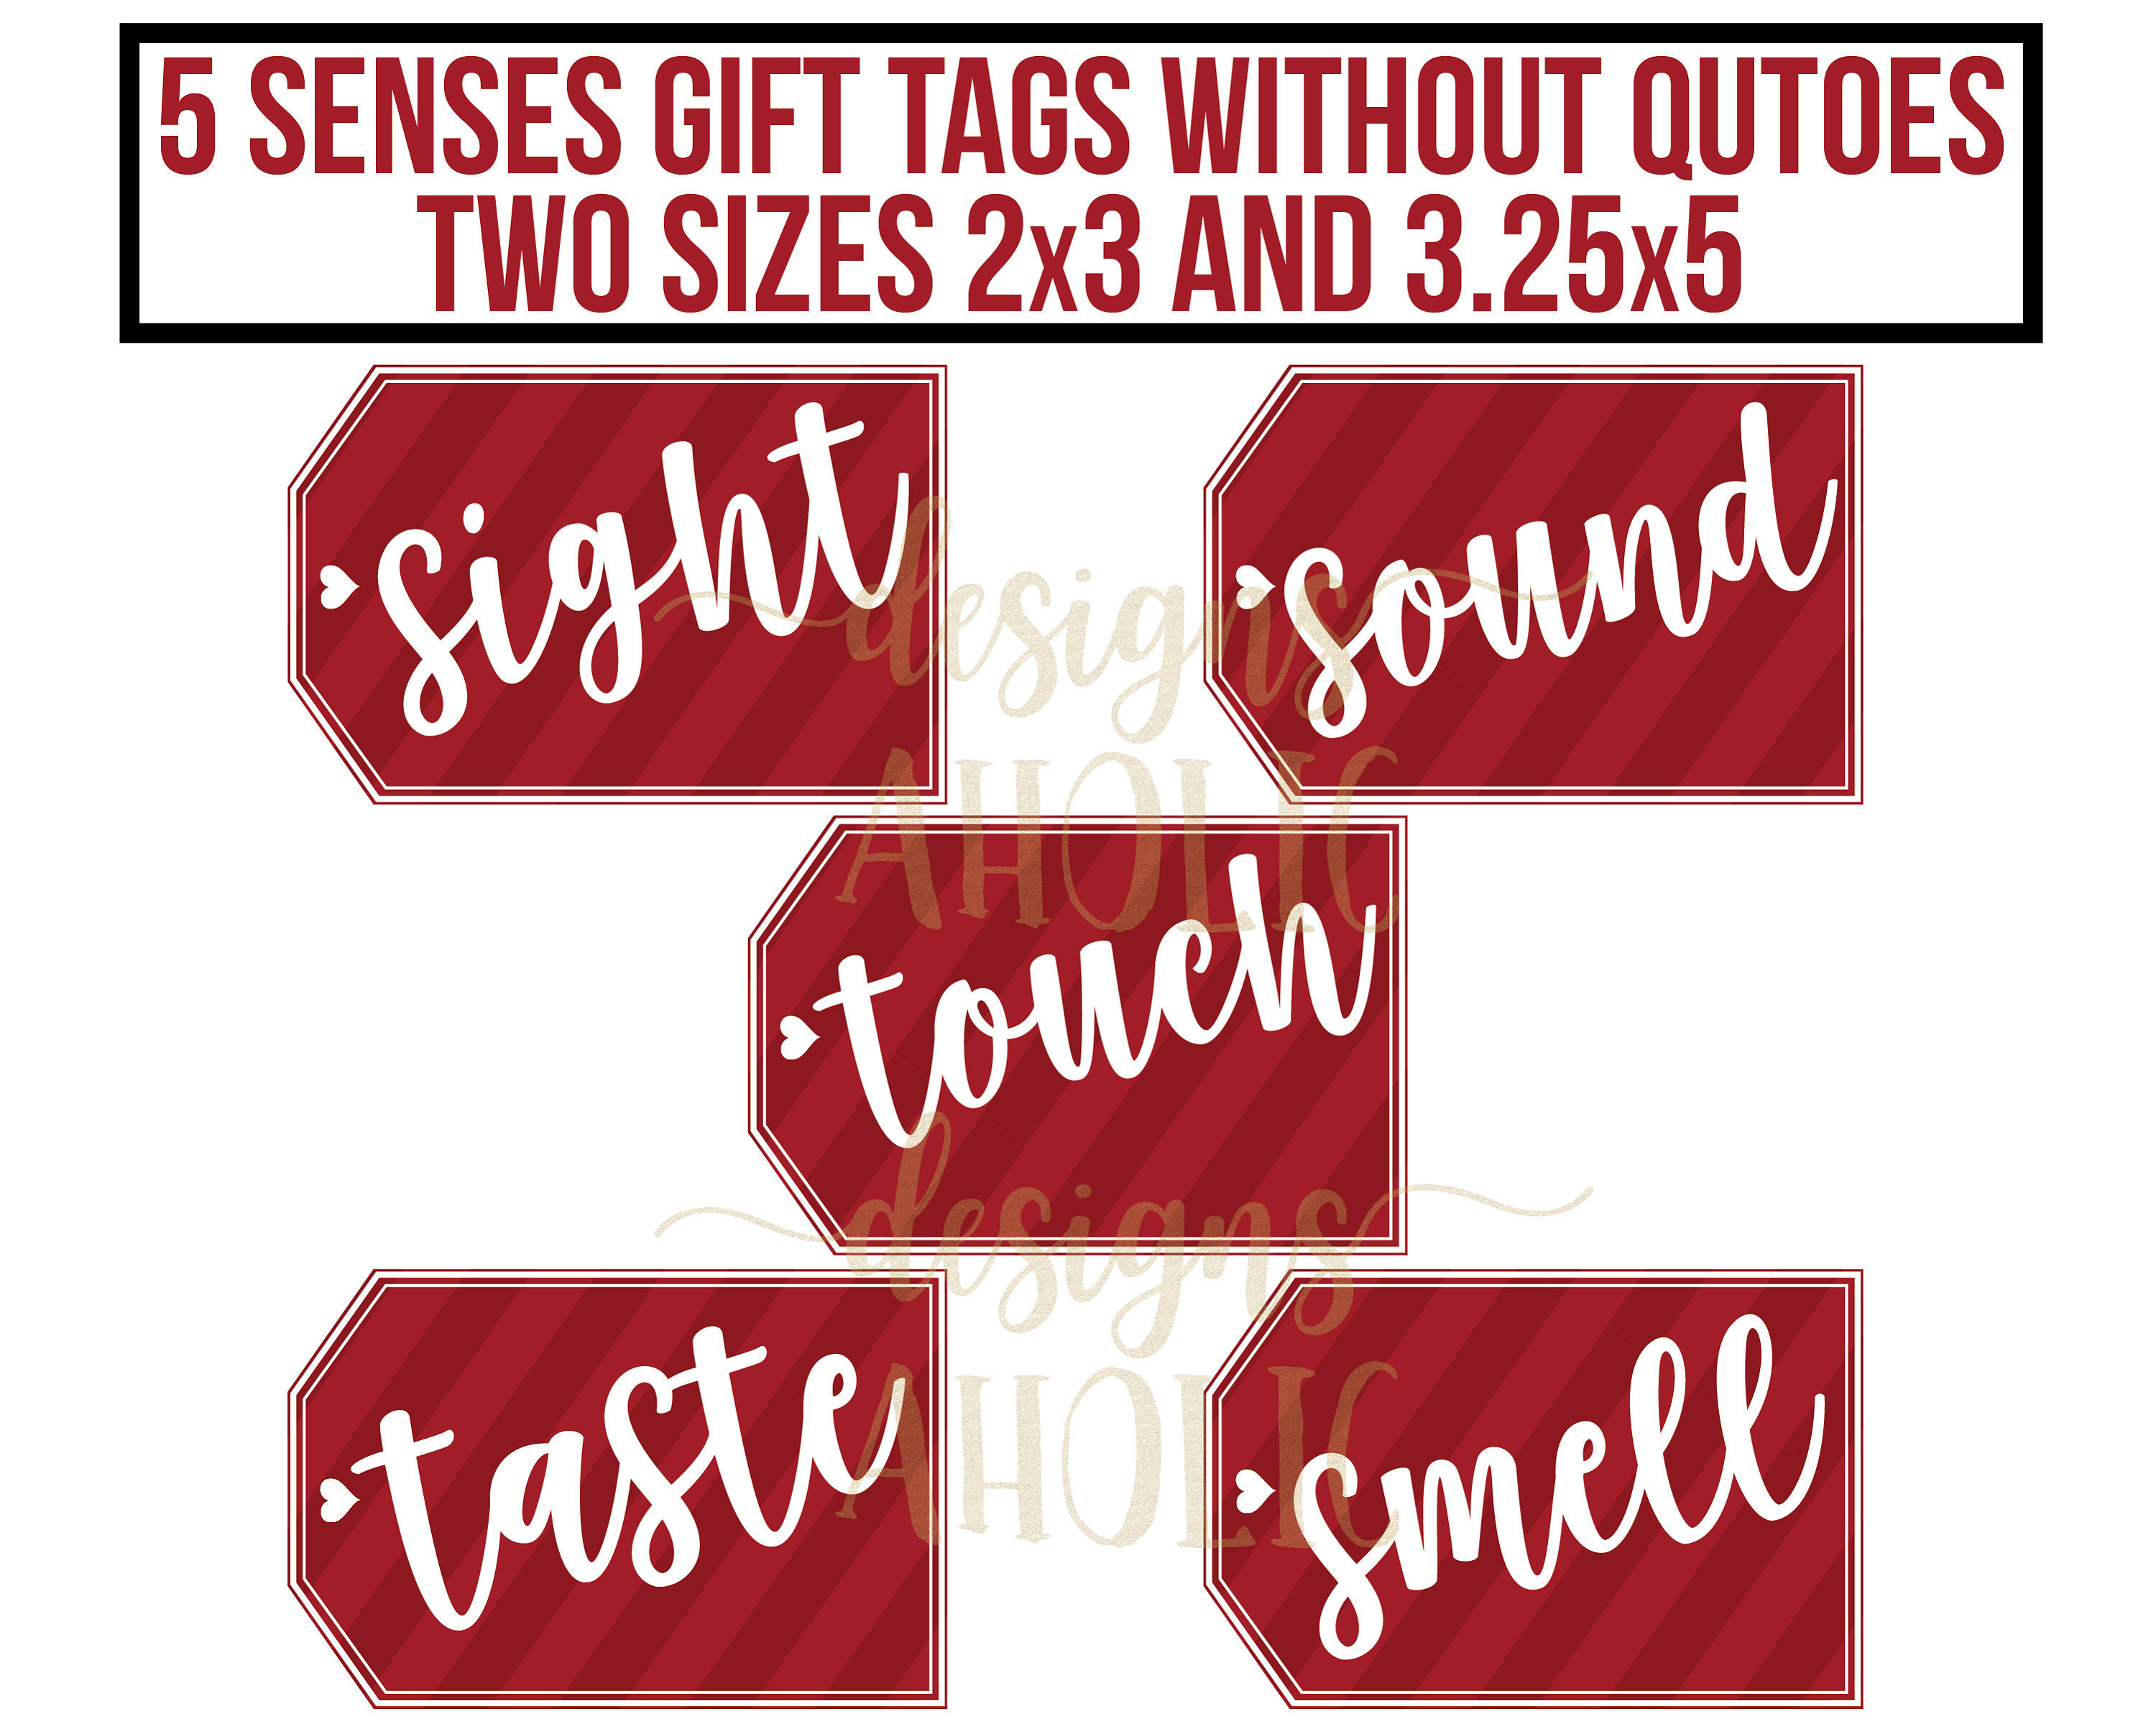 5 Senses Gift Ideas for Him